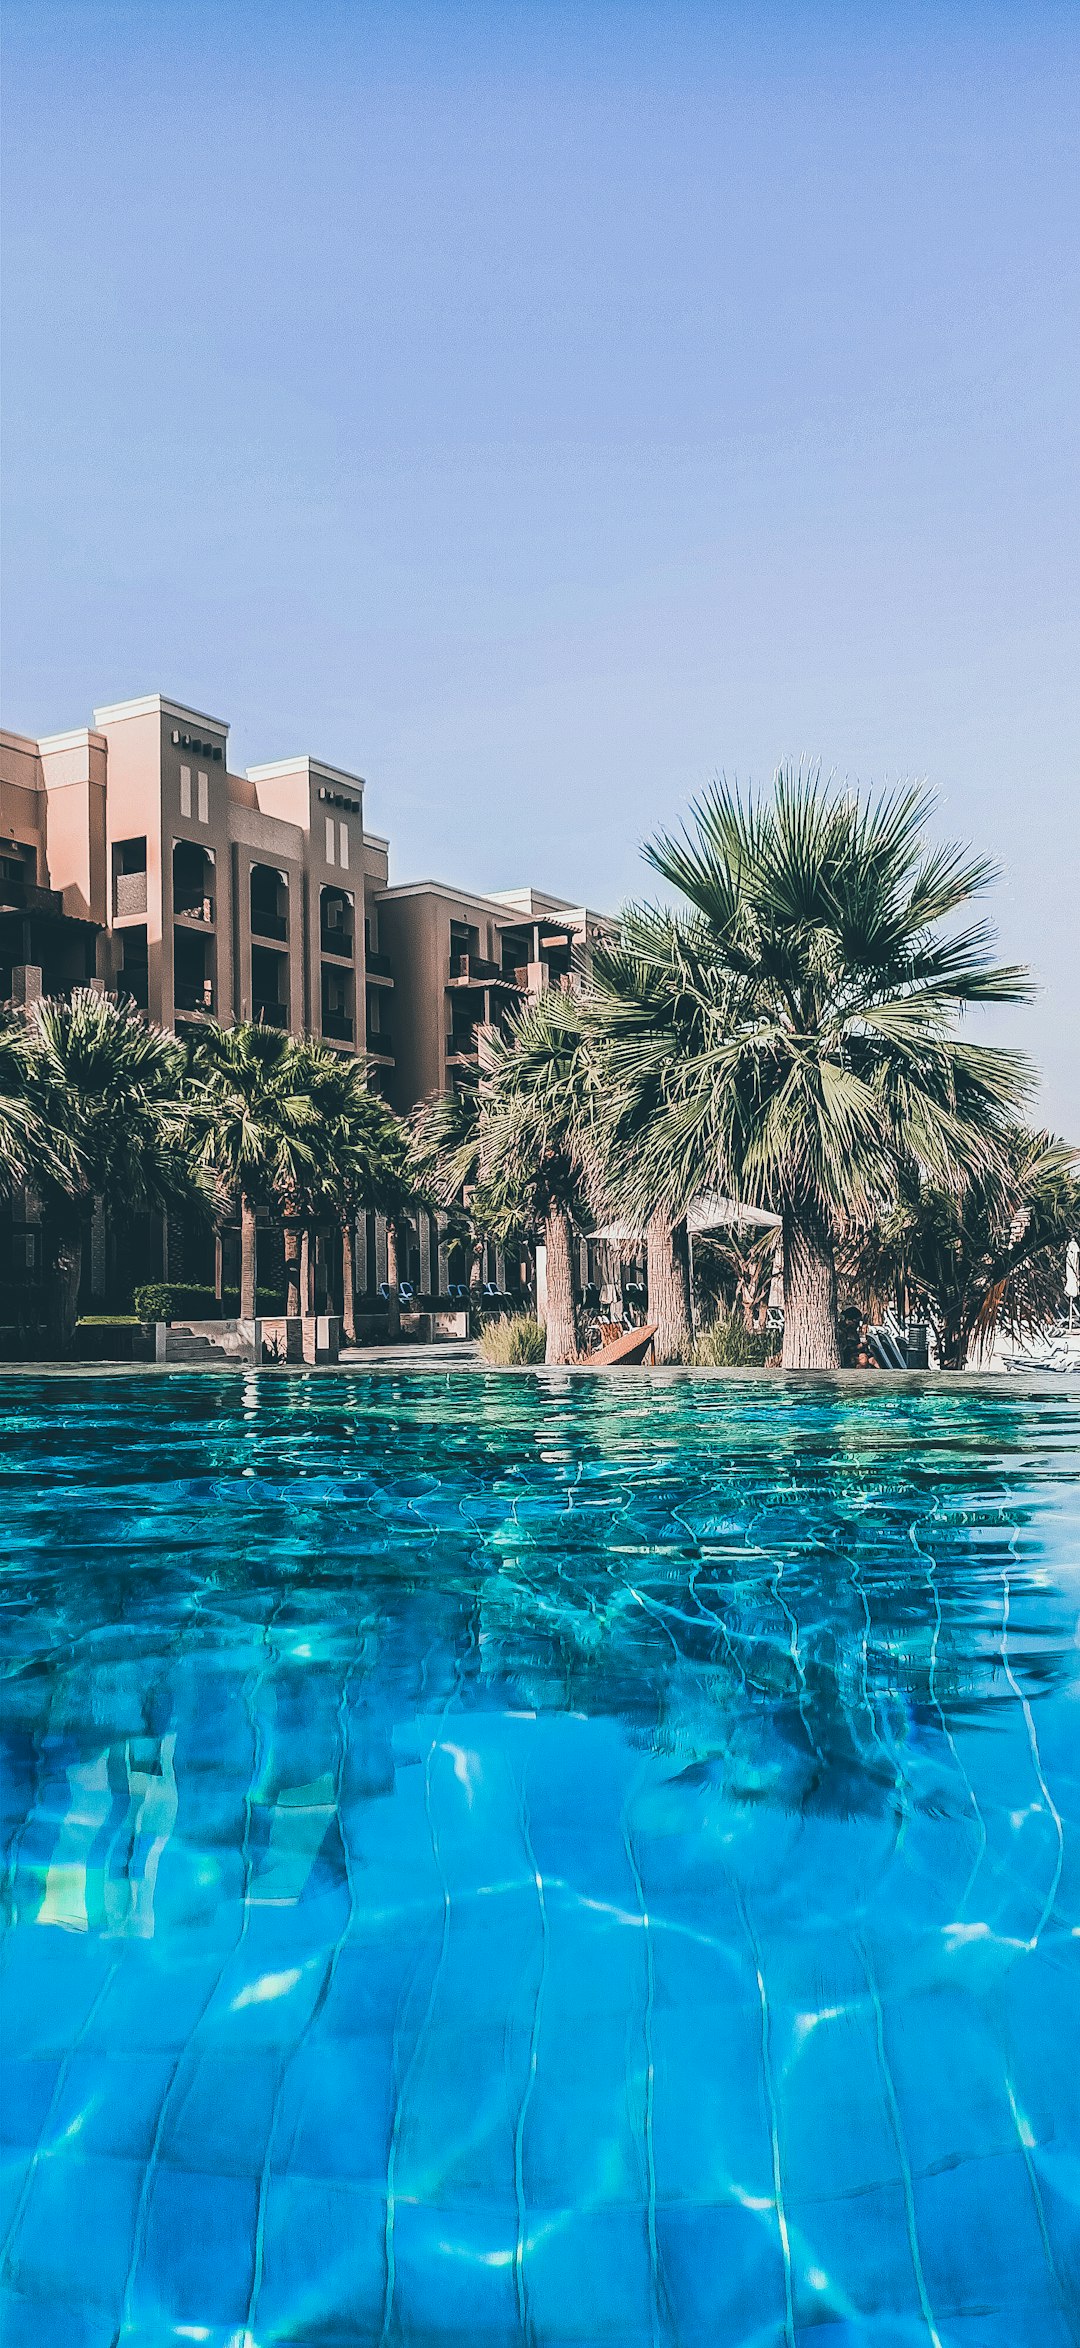 Resort photo spot Ras Al-Khaimah - Ras al Khaimah - United Arab Emirates Sharjah Desert Park